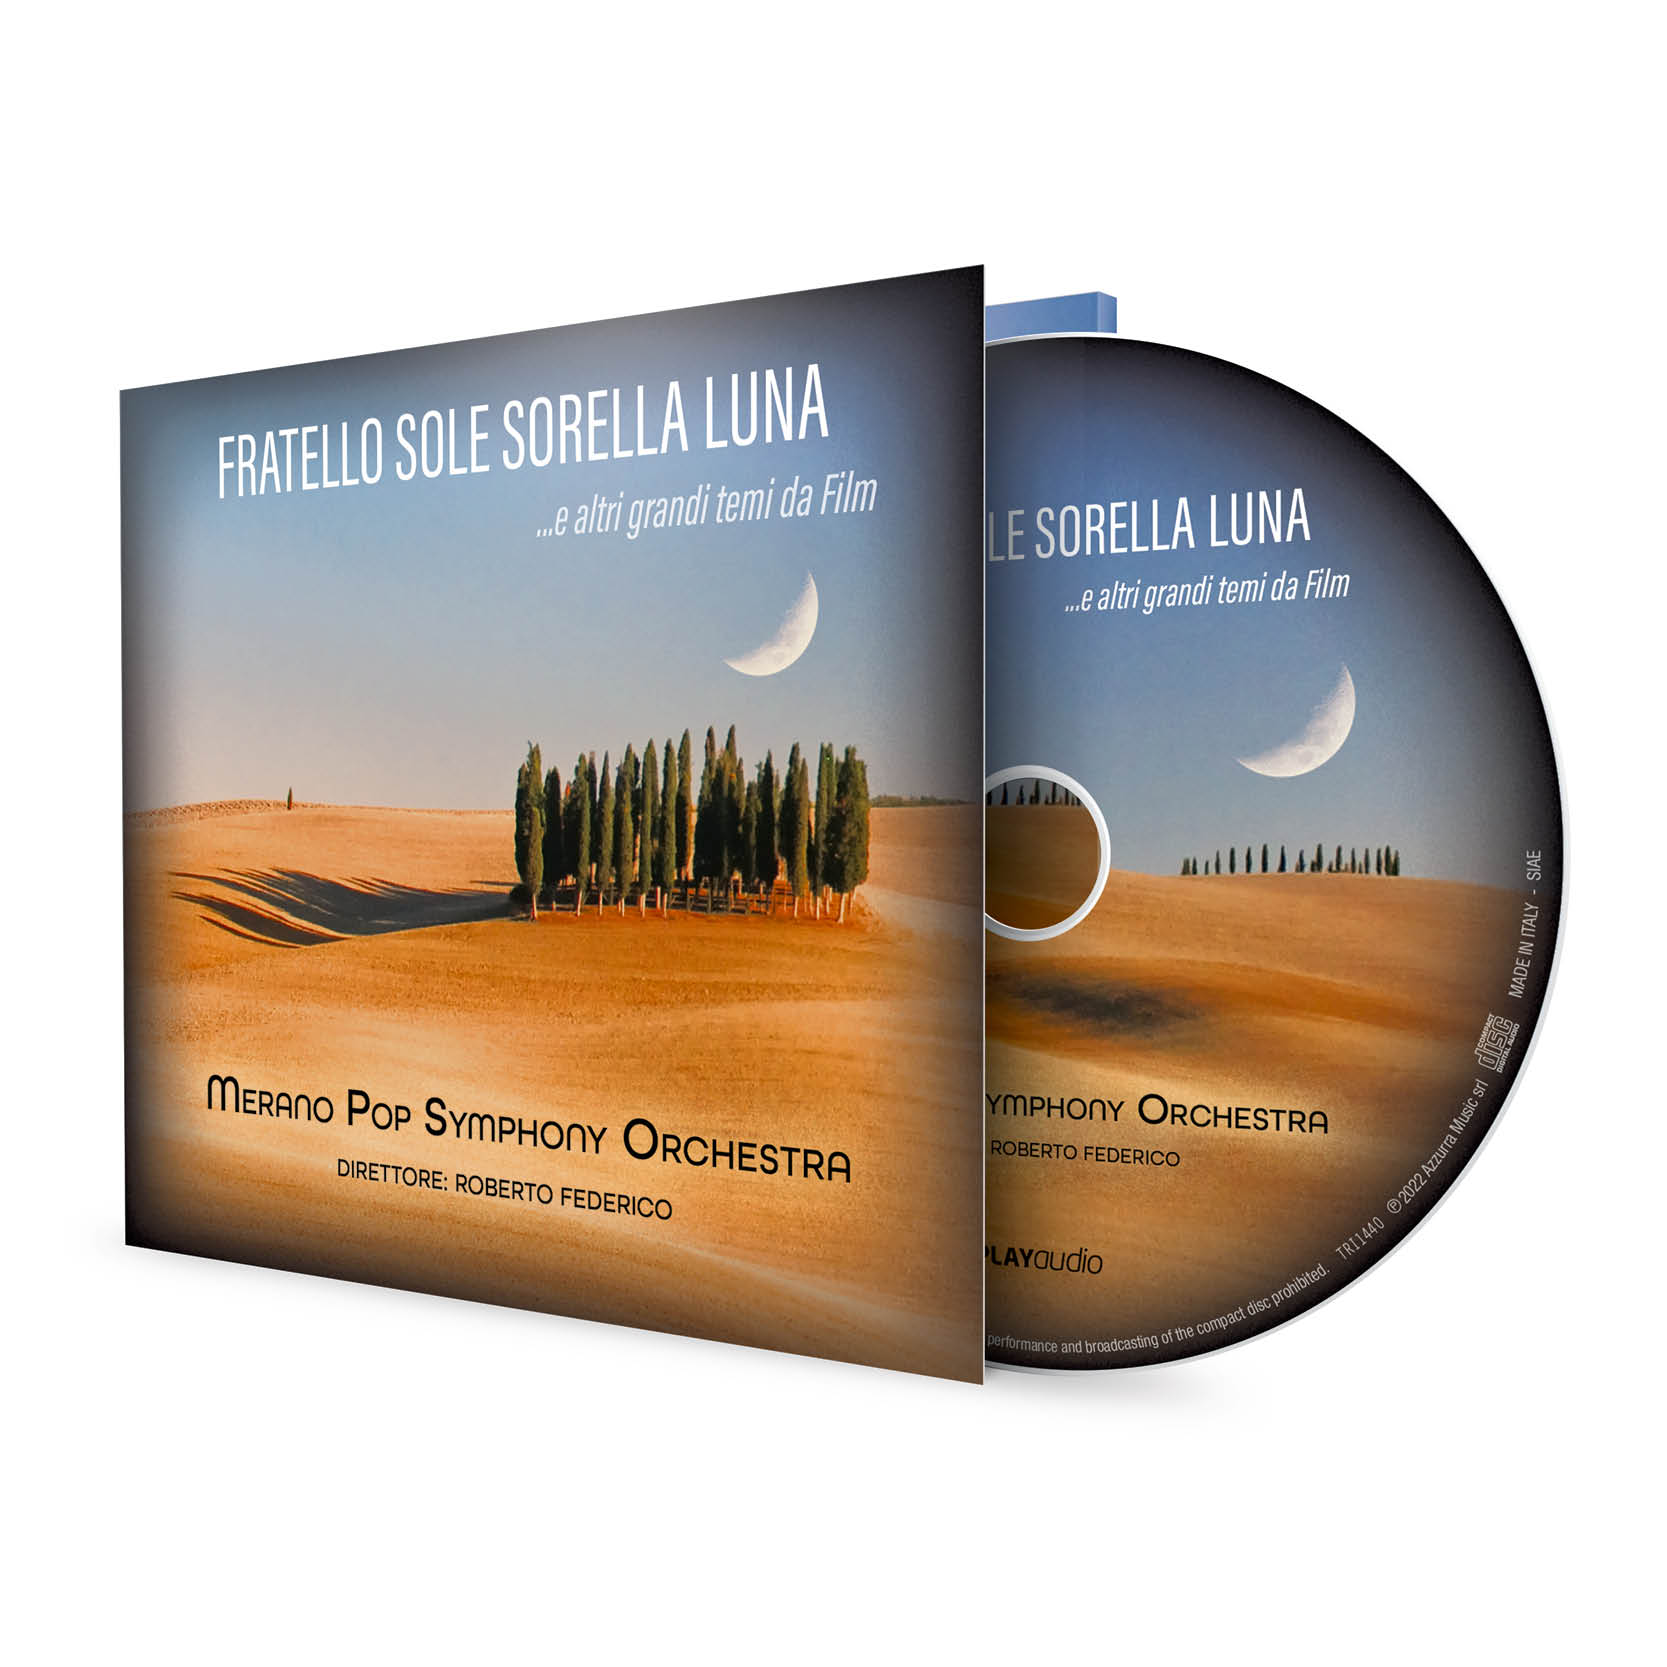 CD - FRATELLO SOLE SORELLA LUNA